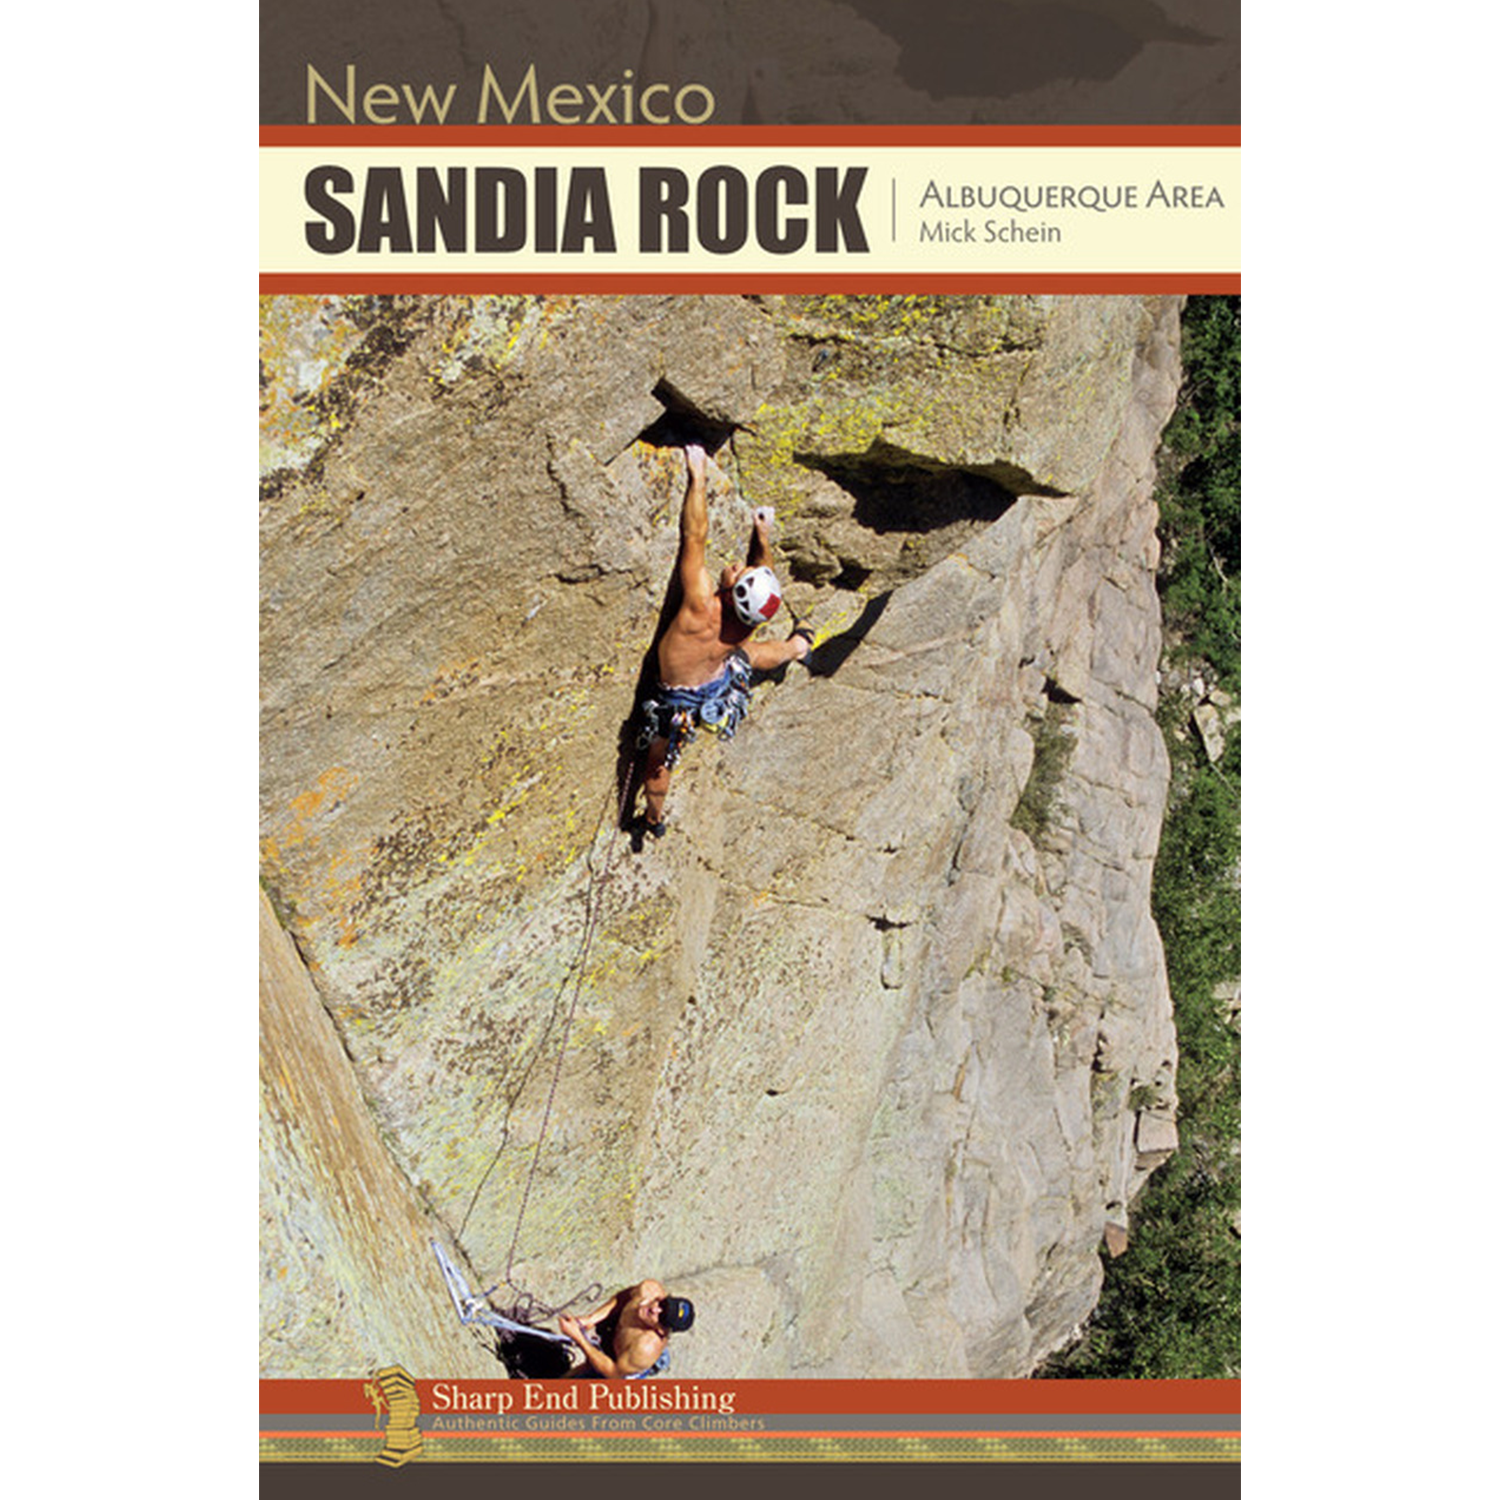 Sandia Rock: Albuquerque Area